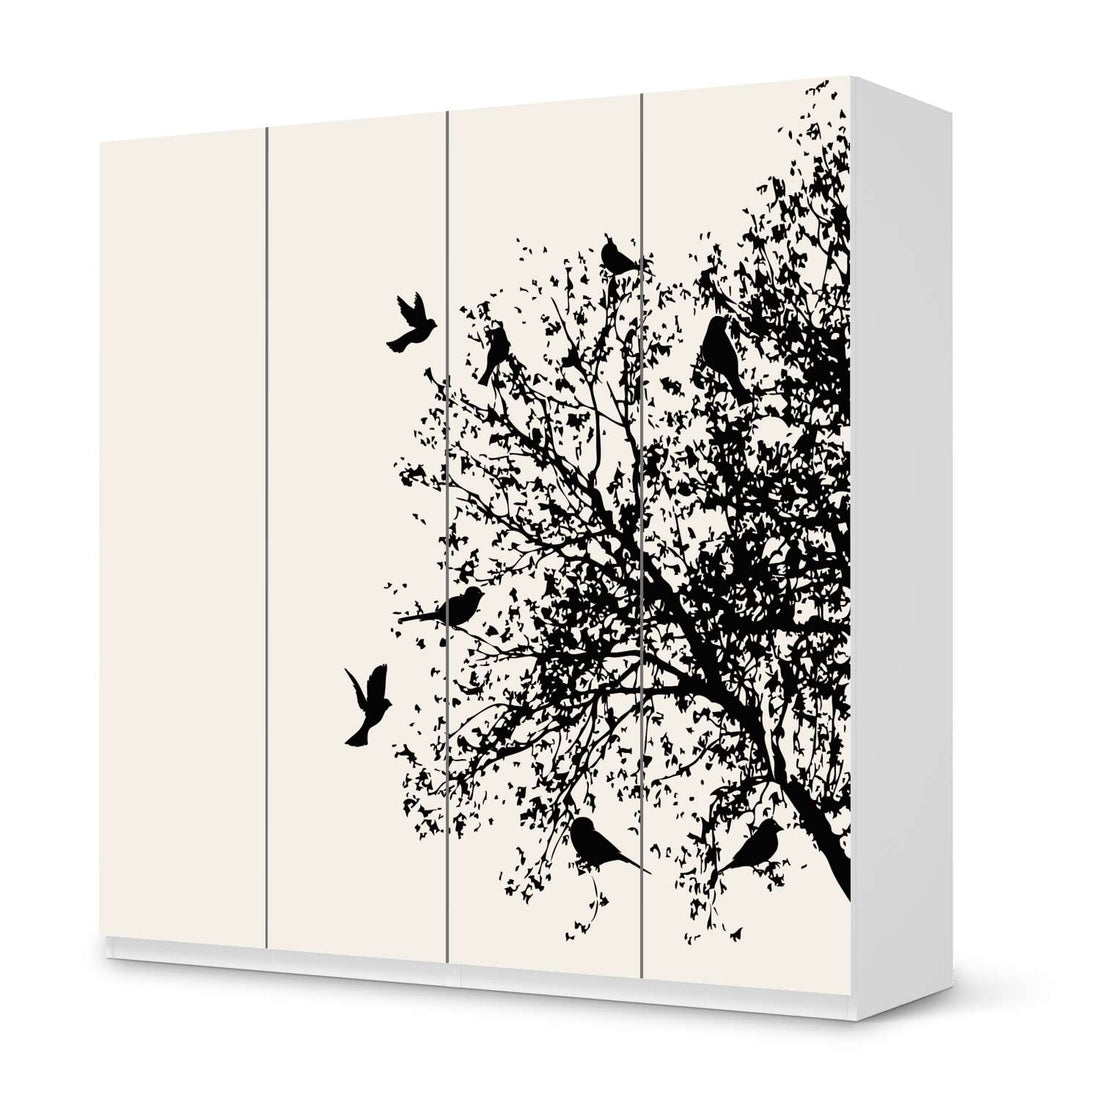 Klebefolie für Schränke Tree and Birds 2 - IKEA Pax Schrank 201 cm Höhe - 4 Türen - weiss